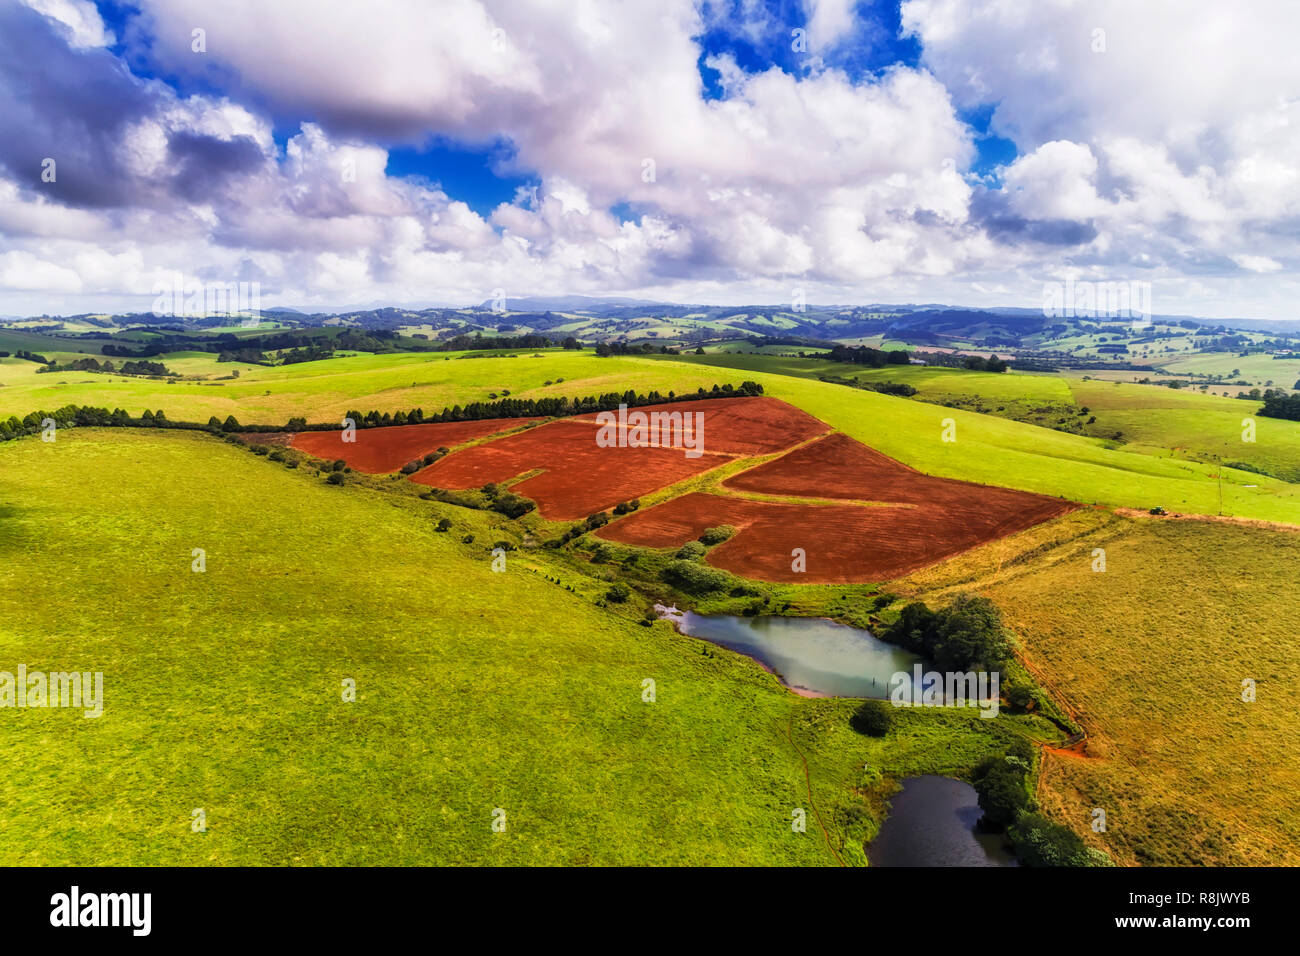 Terra rossa sul campo coltivato ed è circondato da verdi pascoli aziende agricole nei pressi di città regionale di Dorrigo sulla giornata di sole in vista aerea. Foto Stock